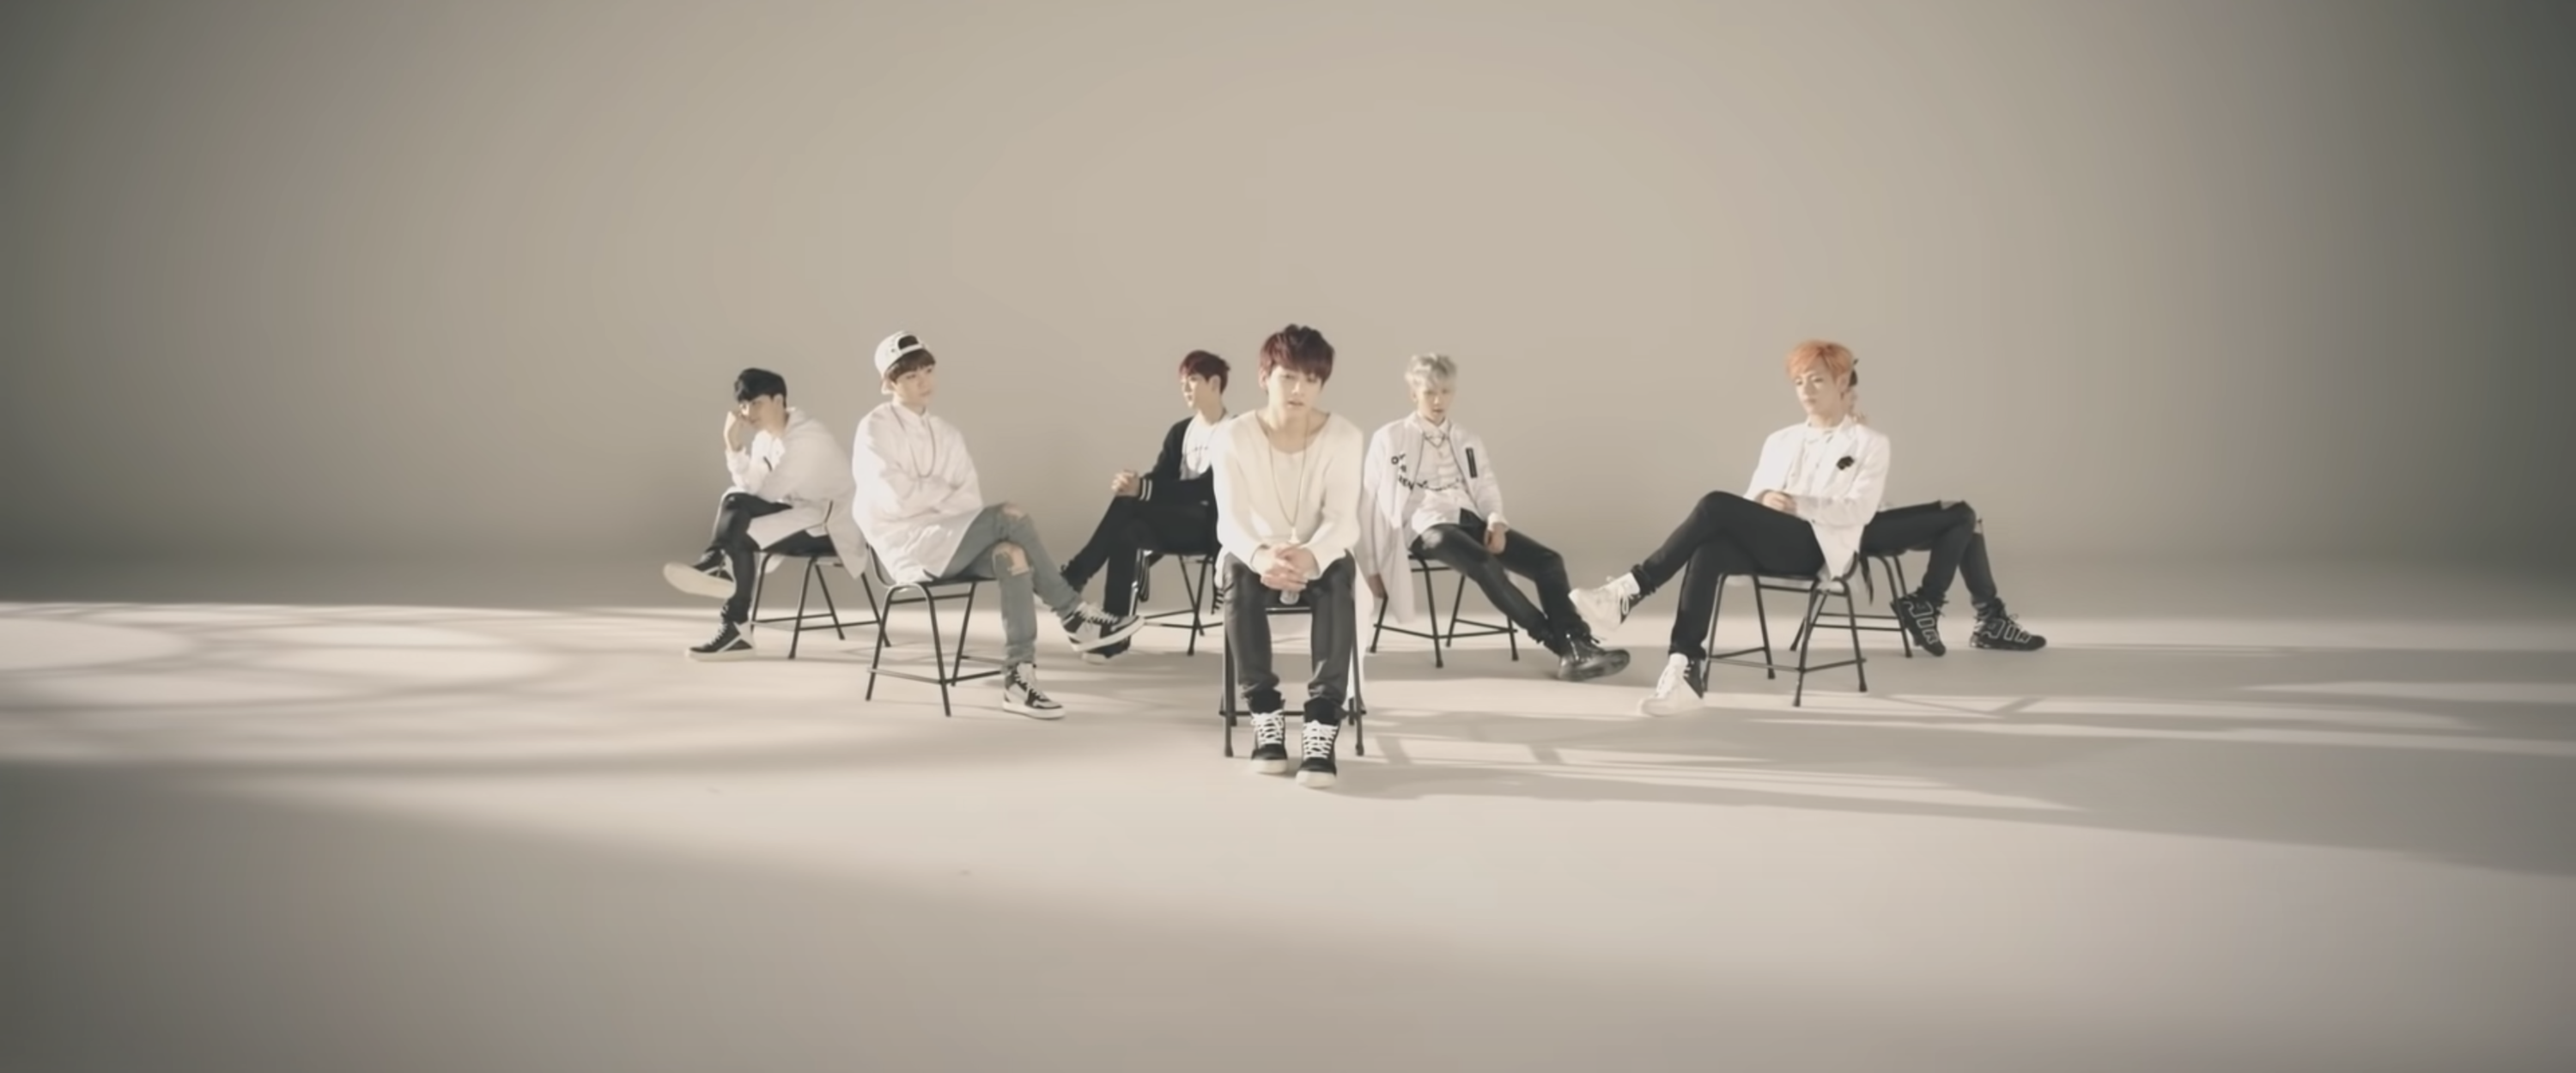 Members of BTS sit in a blank studio